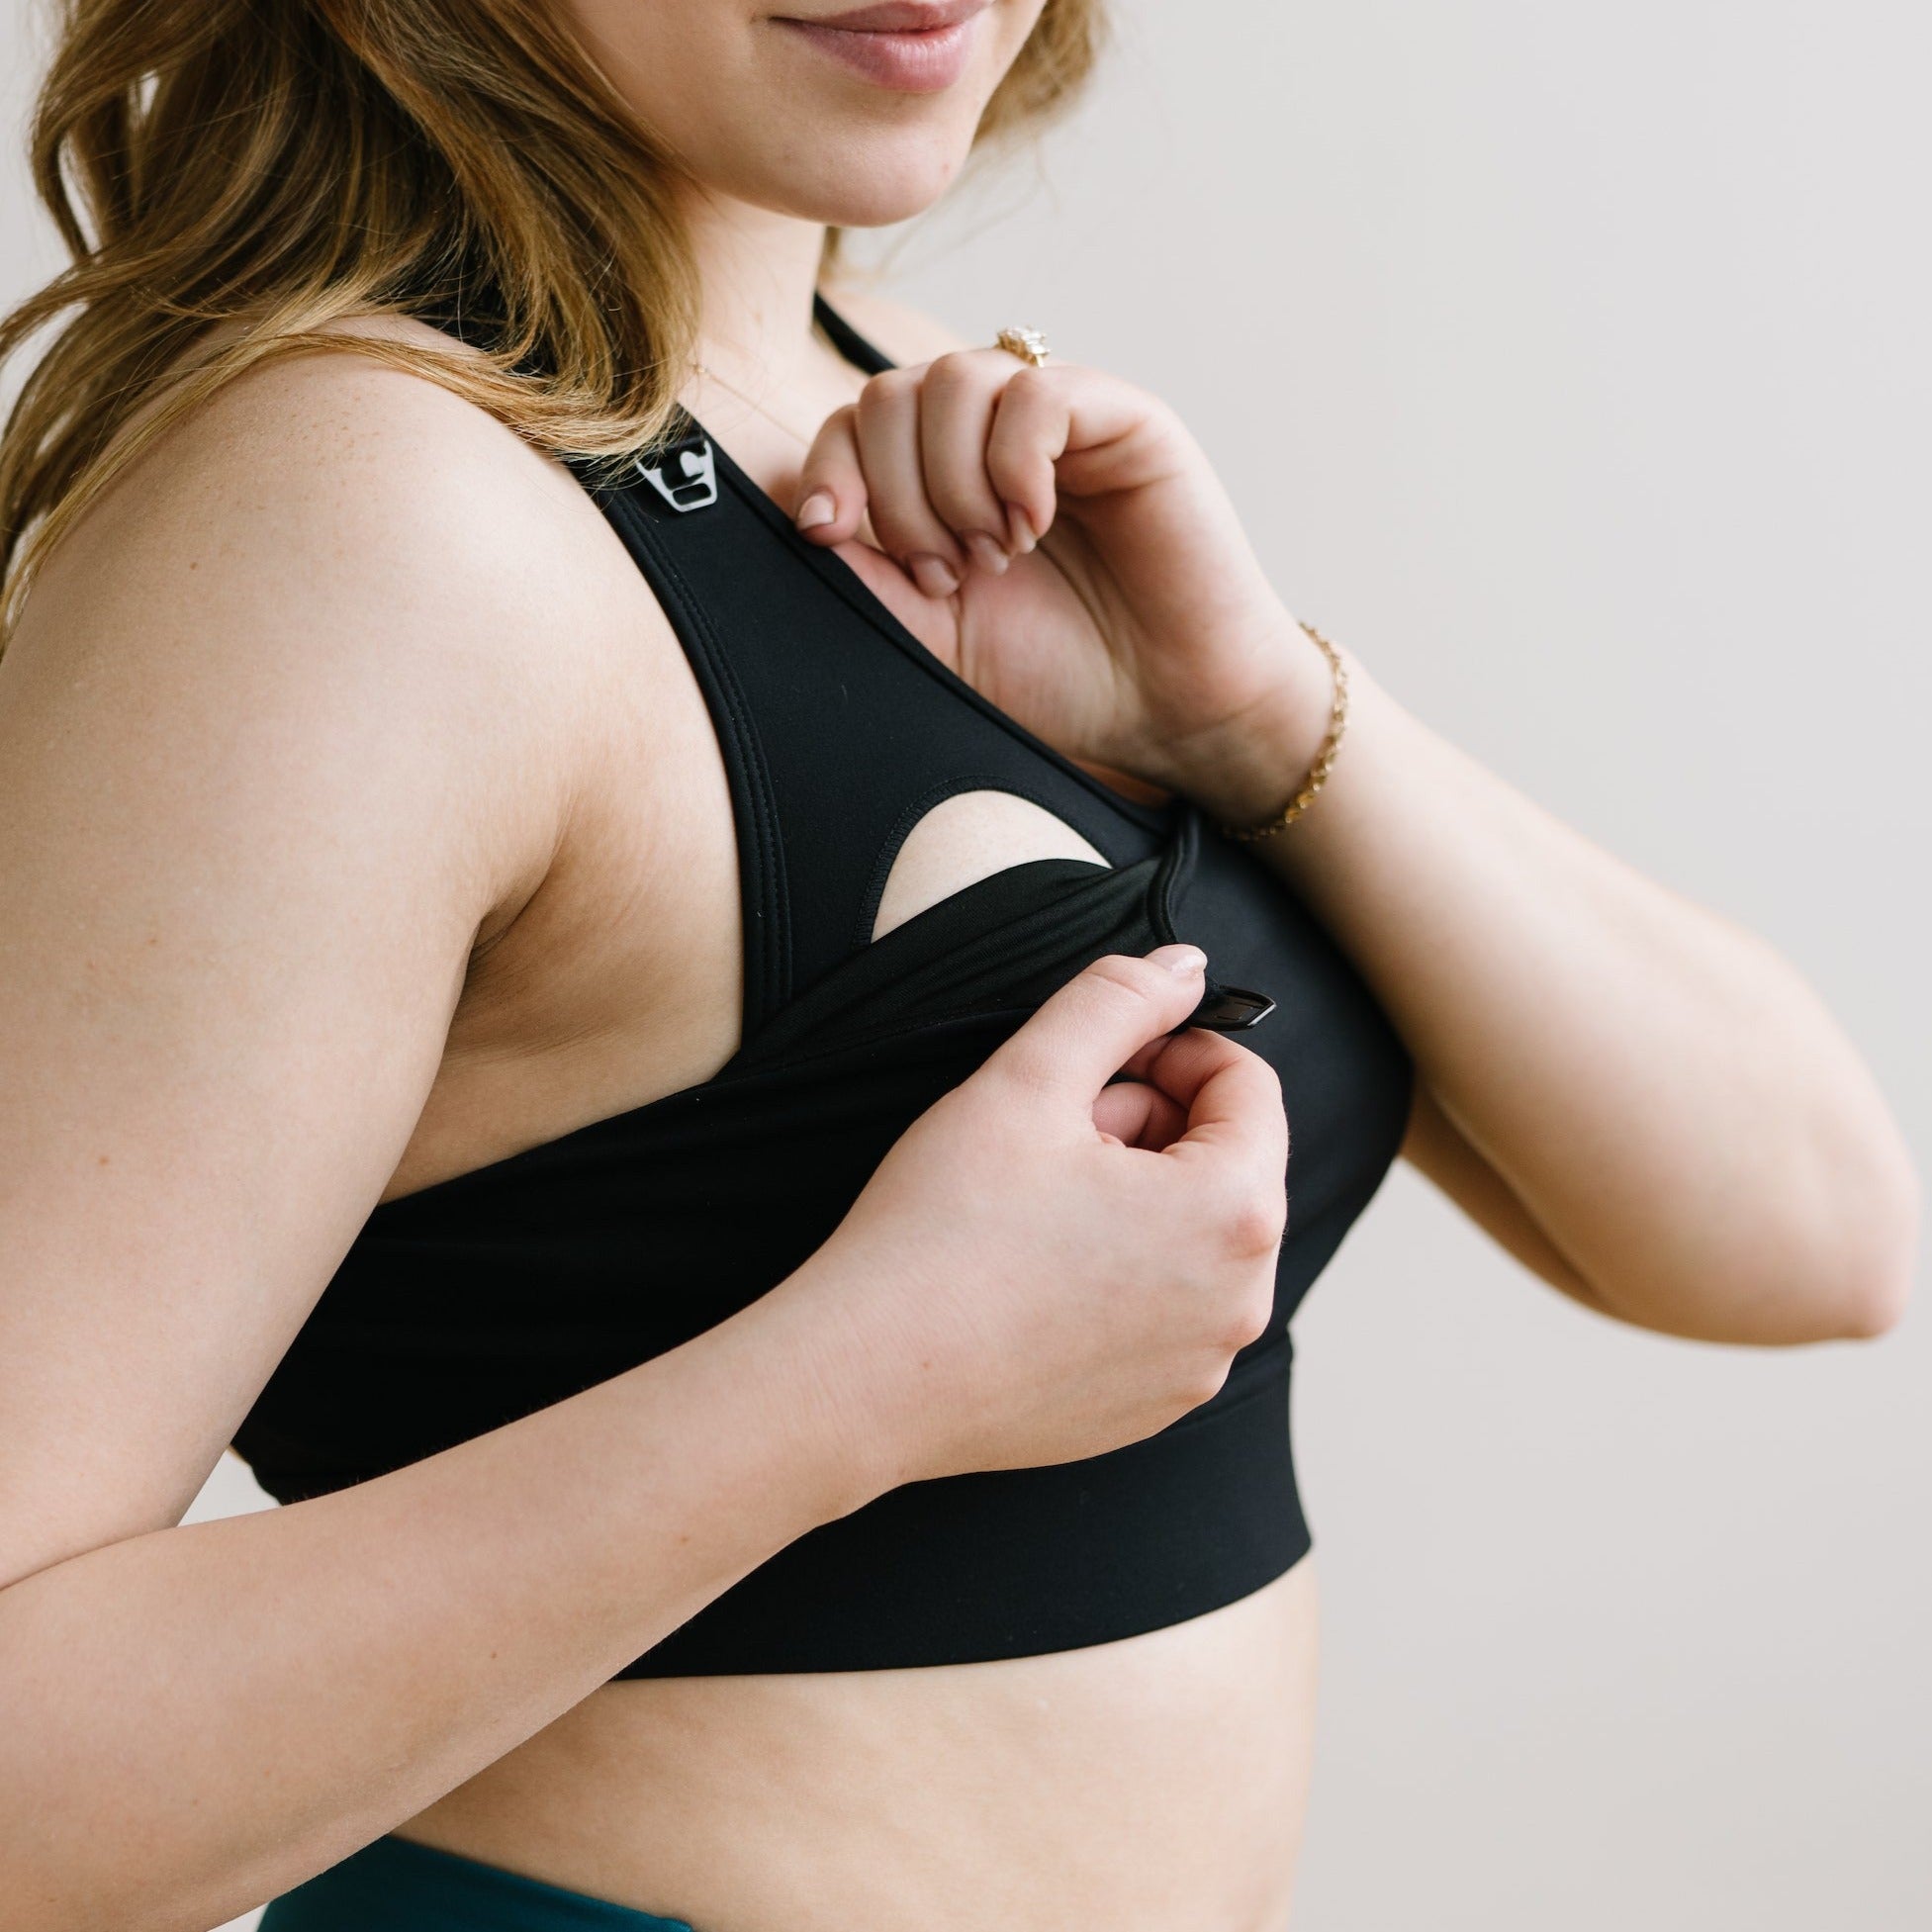 Need a Sports Bra While Breast Feeding? – SportsBra